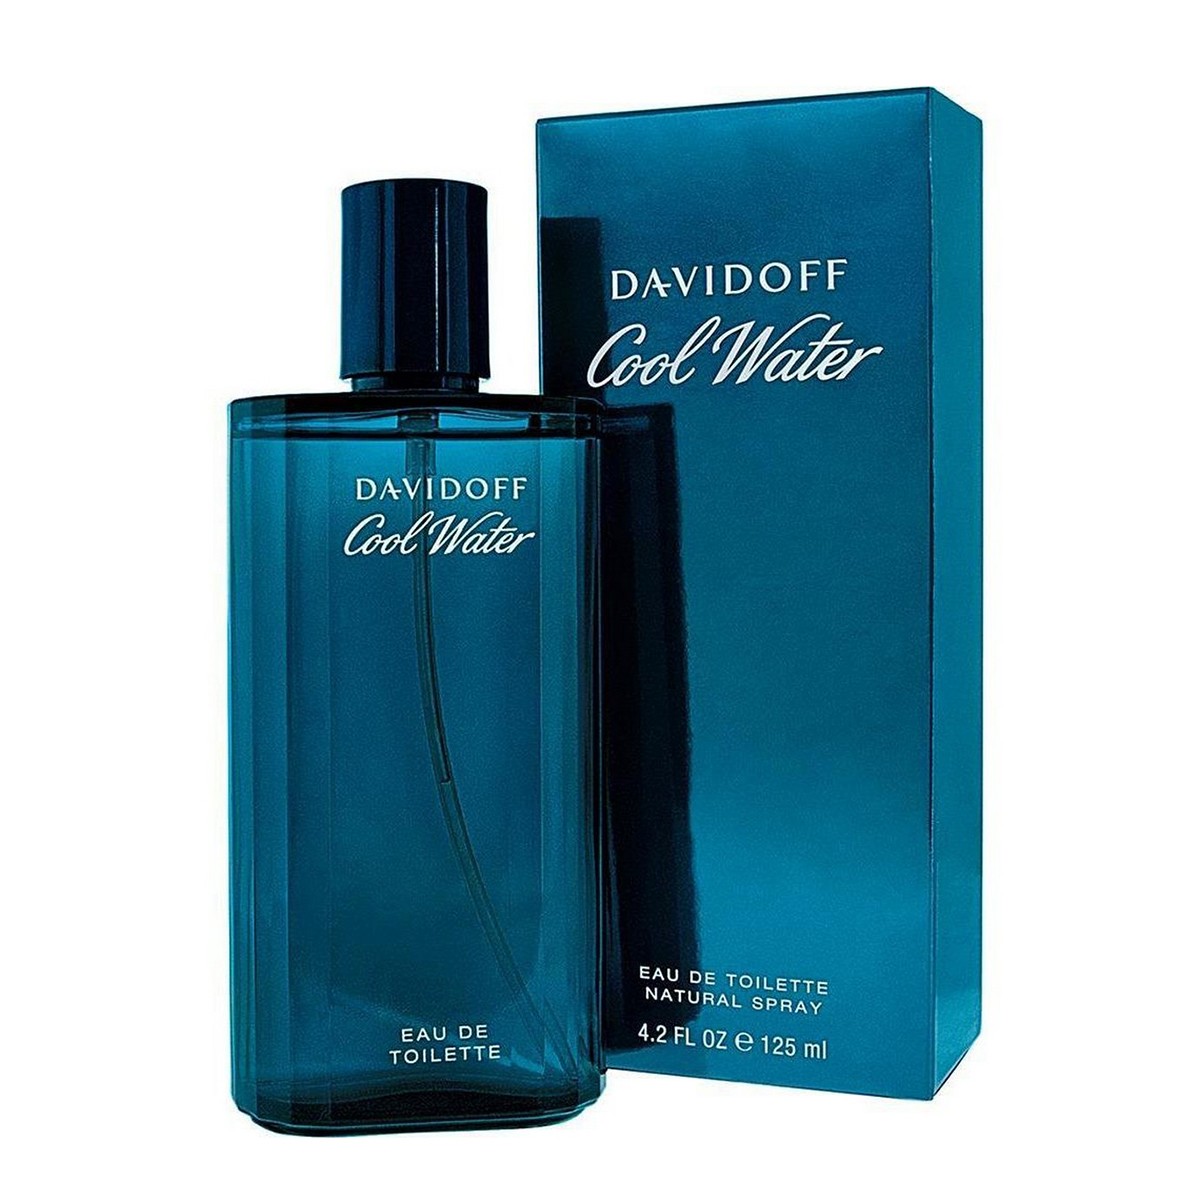 Davidoff Cool Water Perfume 125ml Price in Pakistan